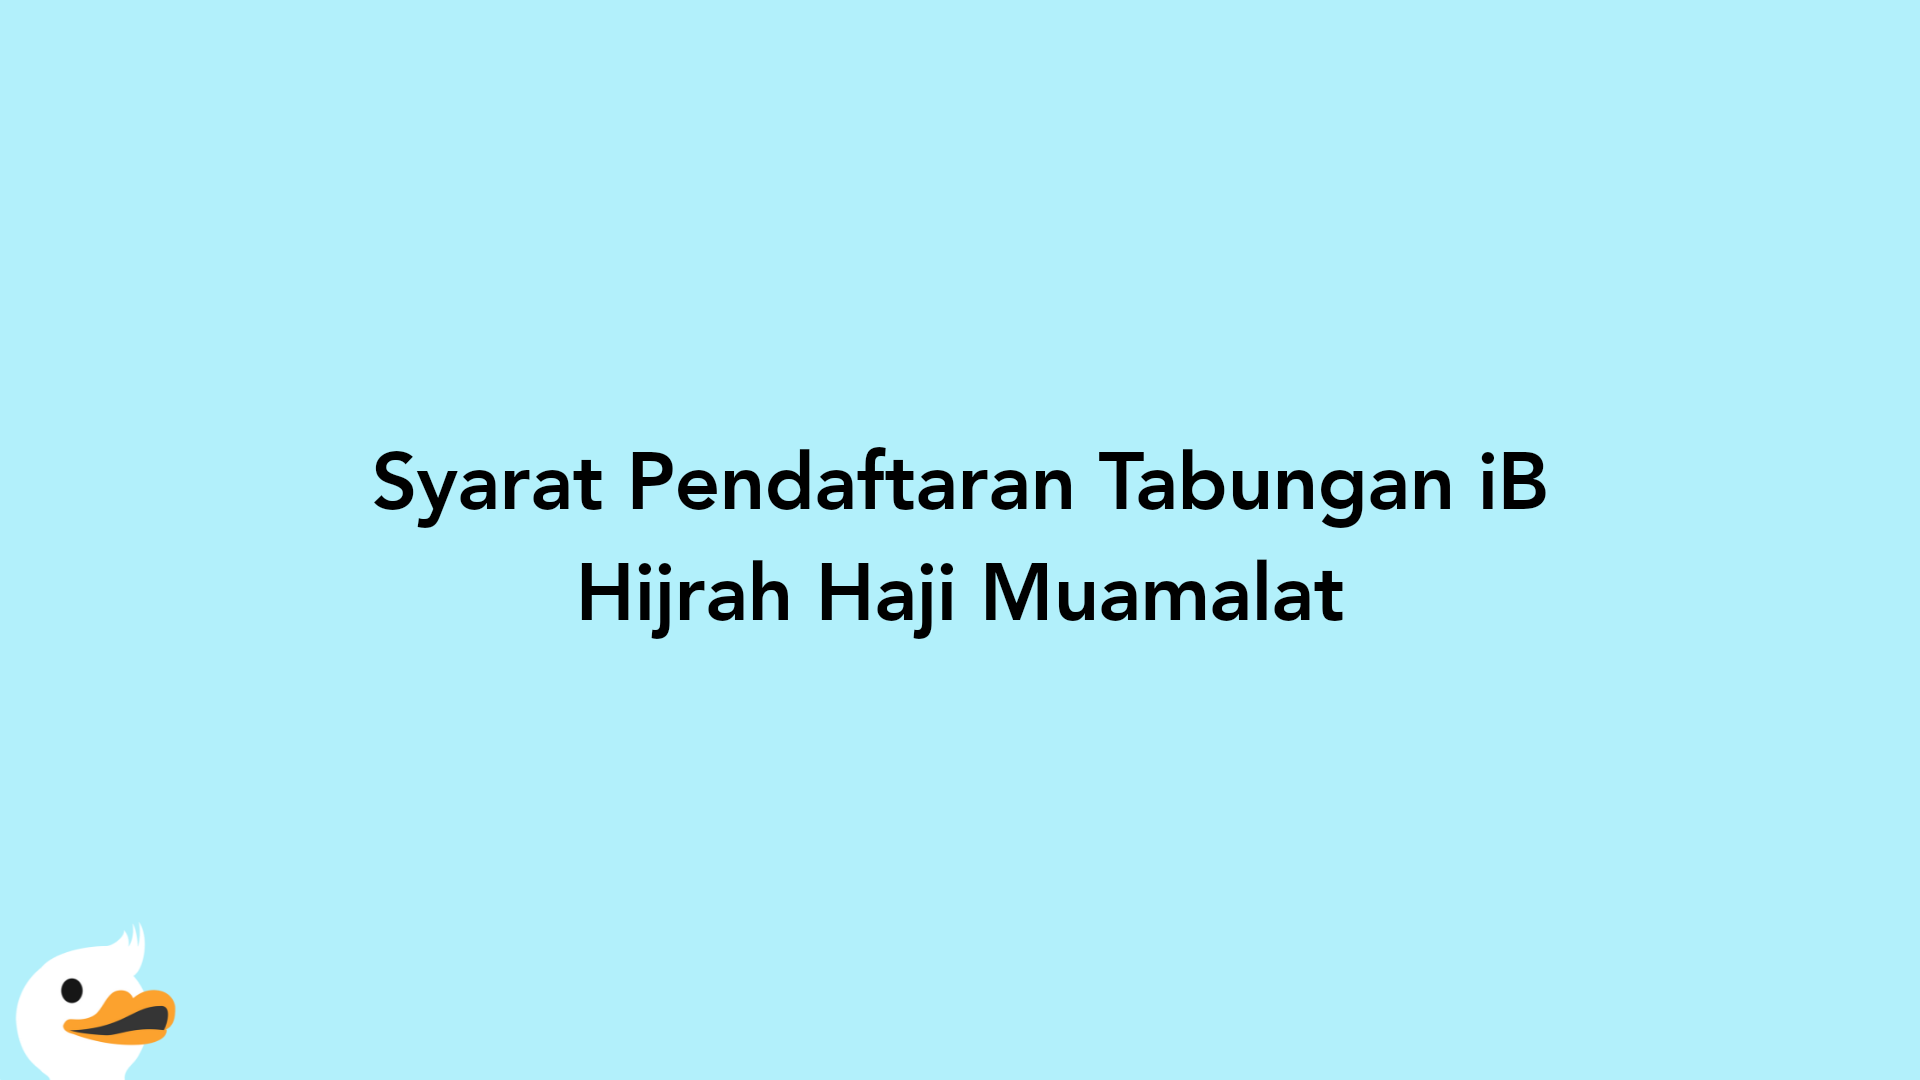 Syarat Pendaftaran Tabungan iB Hijrah Haji Muamalat